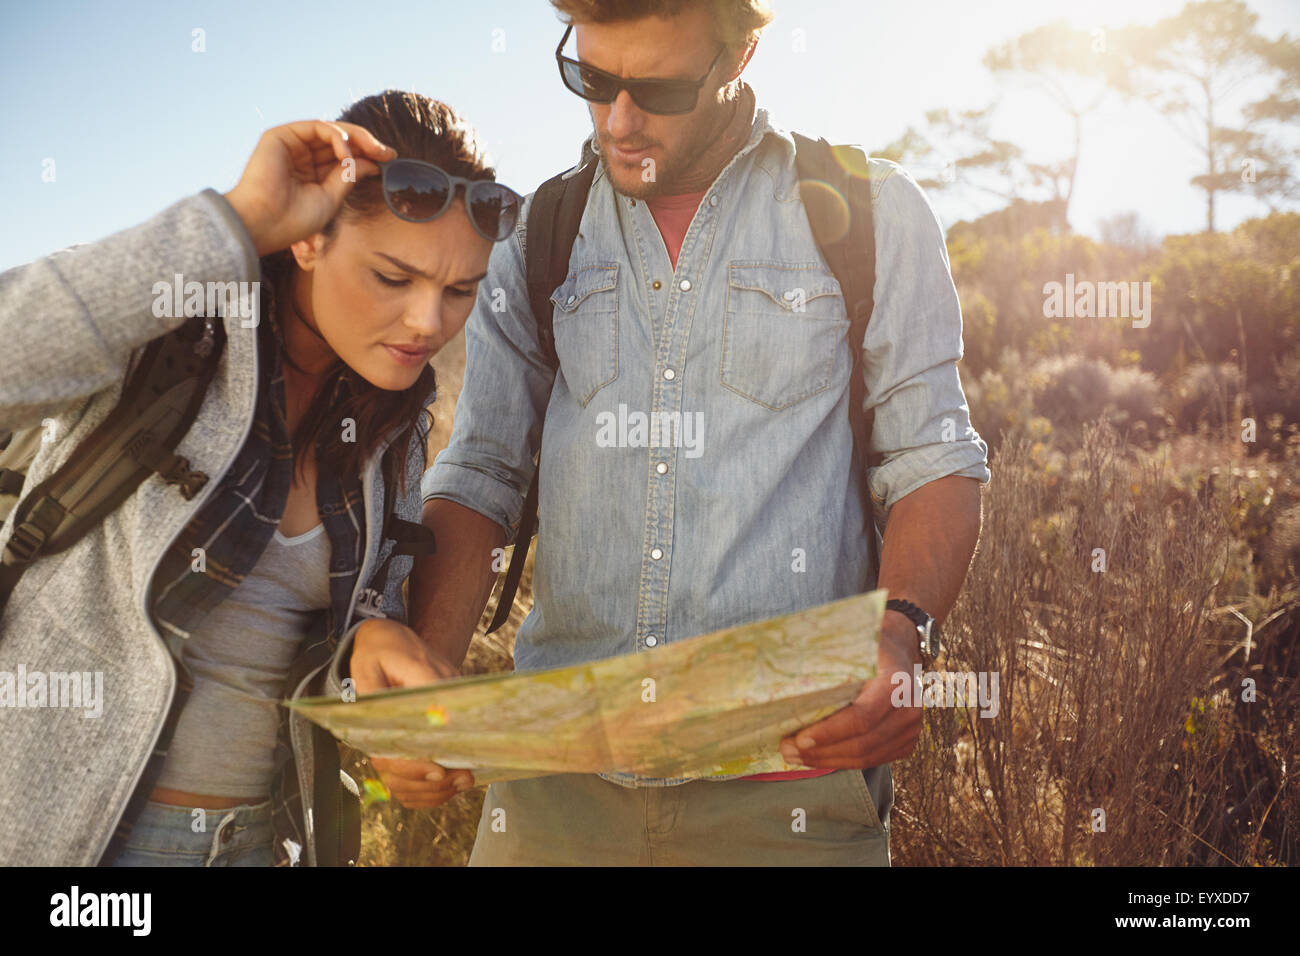 Les randonneurs à la recherche à la carte. Navigation couple ensemble au cours de randonnée voyage à l'extérieur dans la campagne. Banque D'Images